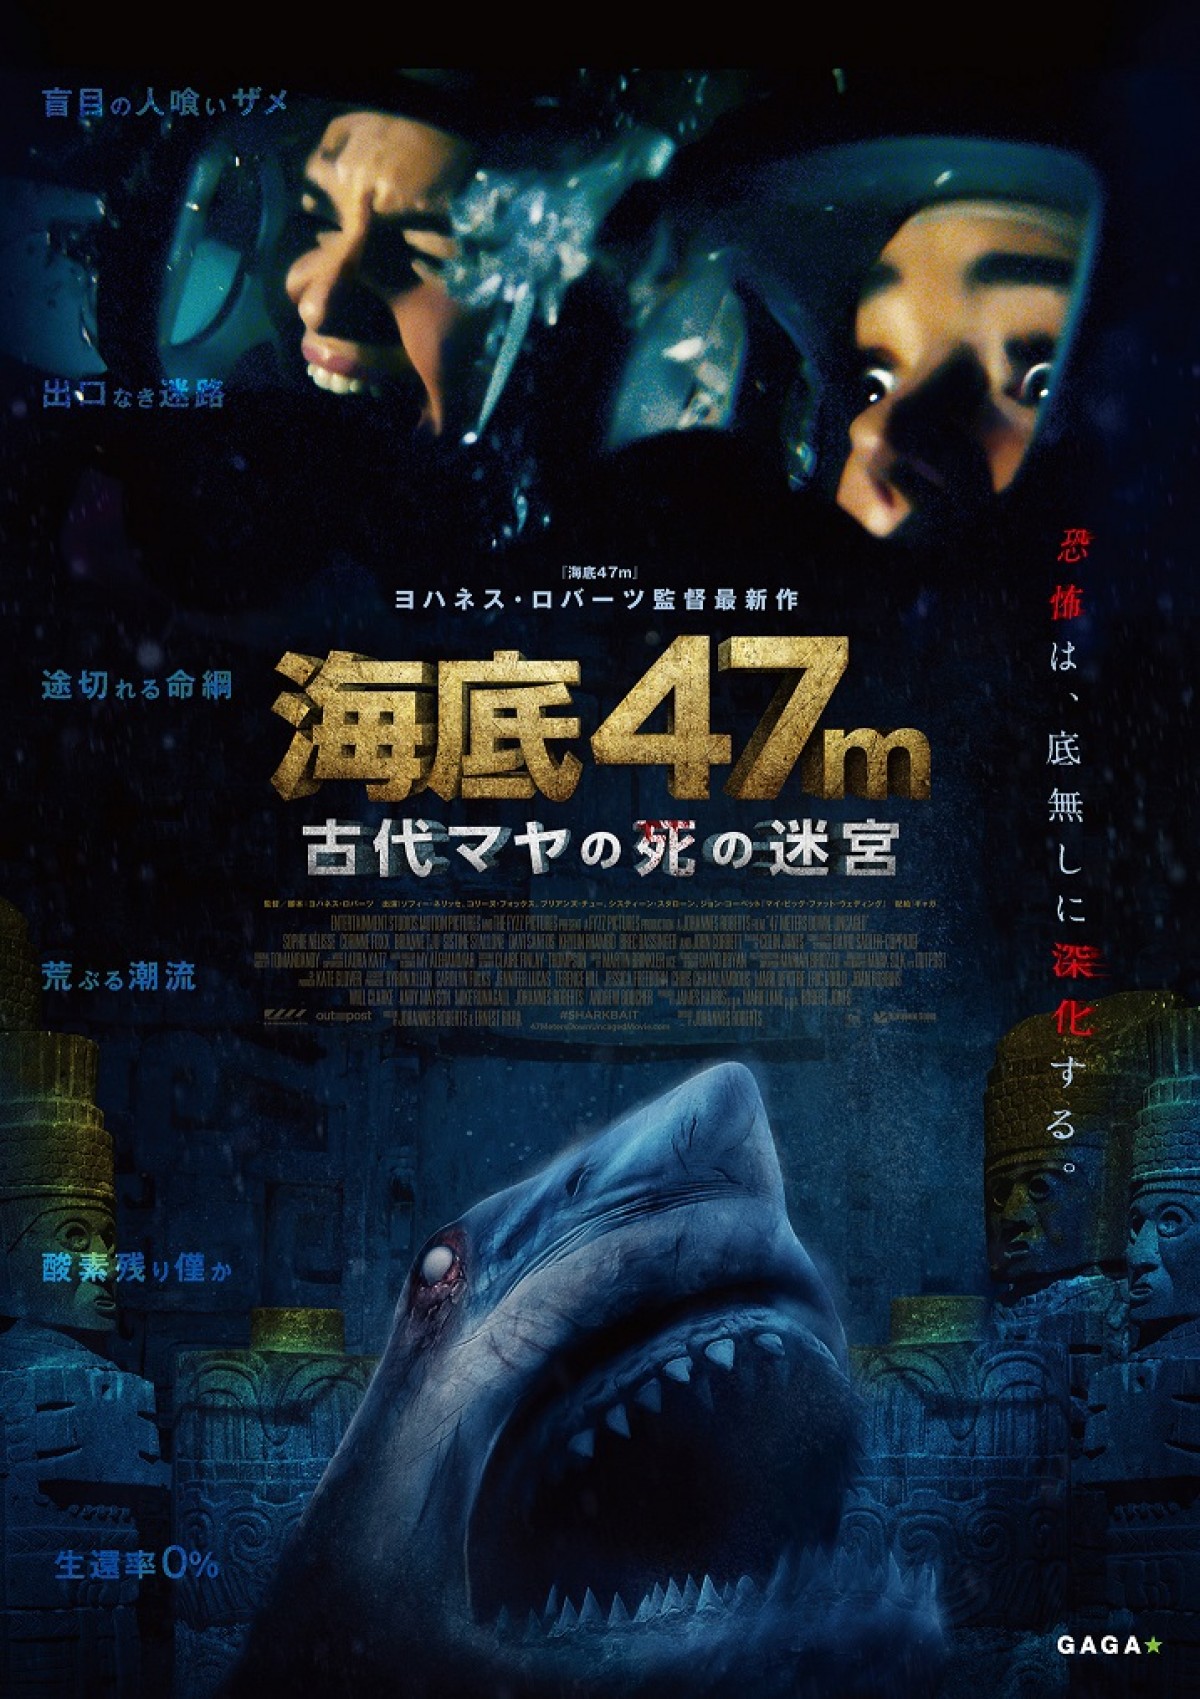 マヤ文明の遺跡で巨大人喰いサメに襲われる！ 『海底47m』第2弾公開＆予告解禁